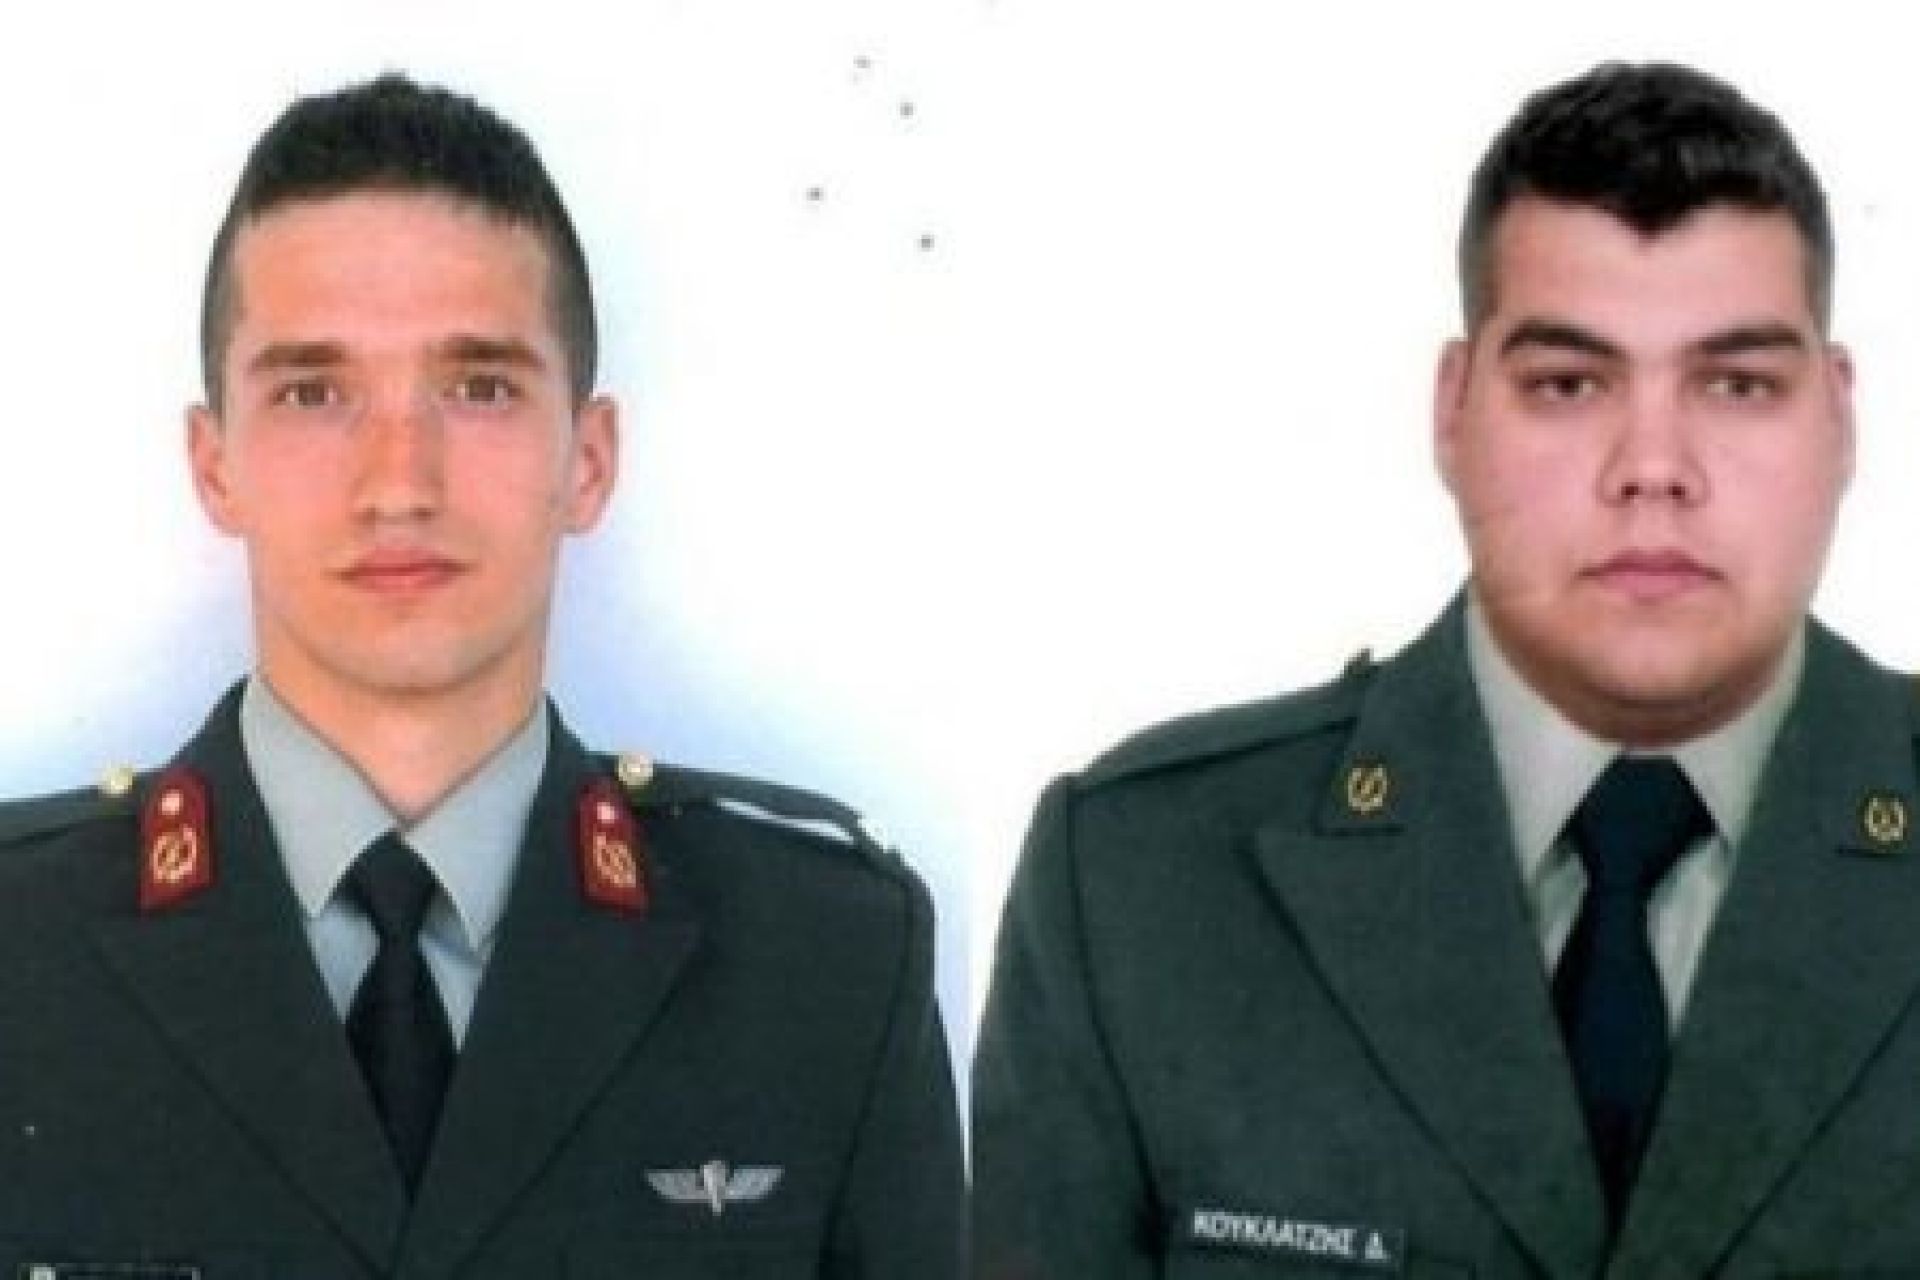 Ολοκληρώθηκε η ΕΔΕ για την αιχμαλωσία των 2 στρατιωτικών: Αβλεψίες και κακοί χειρισμοί